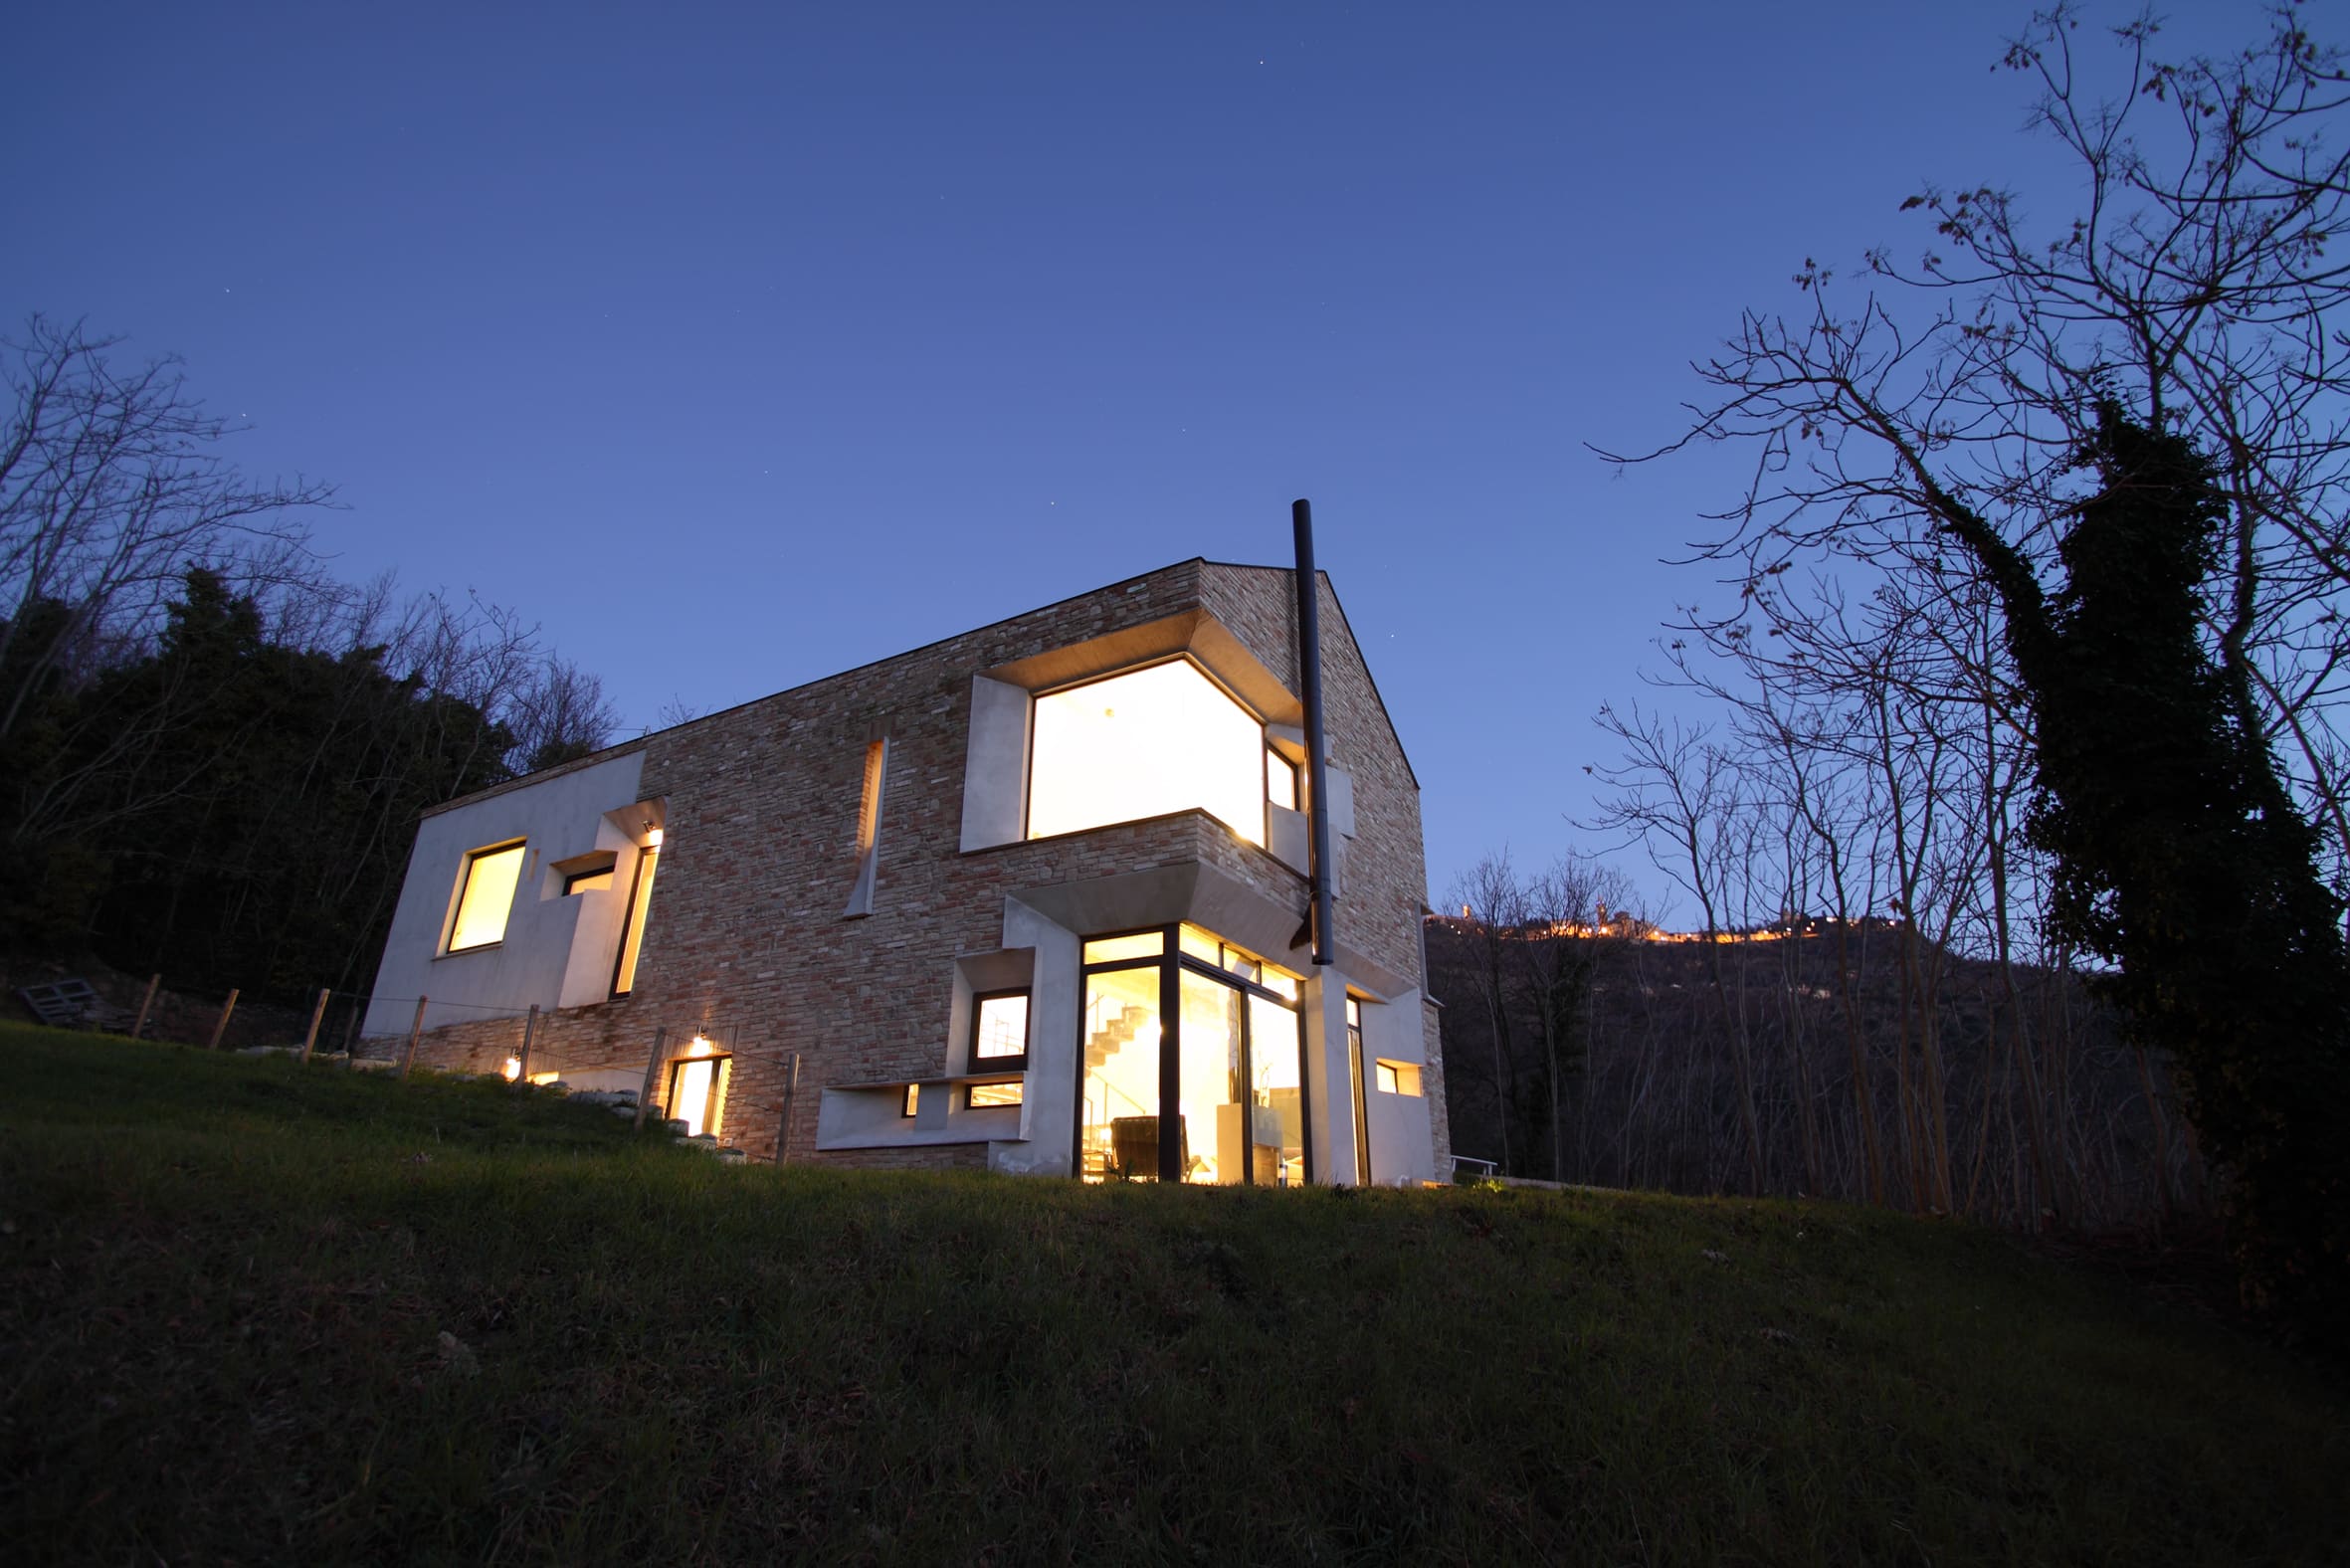 Barilari Architetti - Picture House (1)